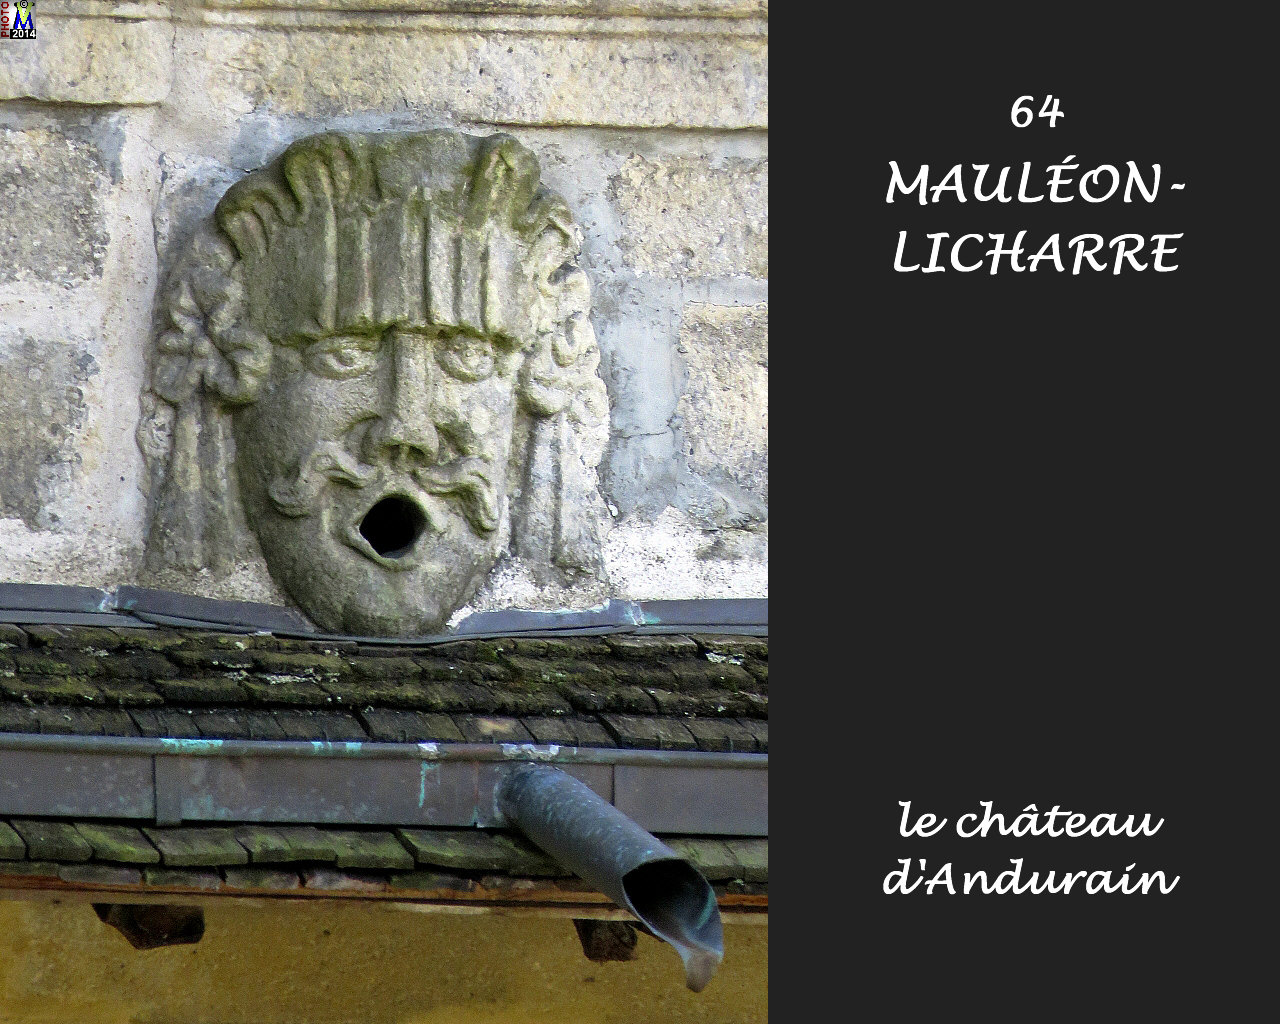 64MAULEON-LICHARRE_chateauAndurain_138.jpg